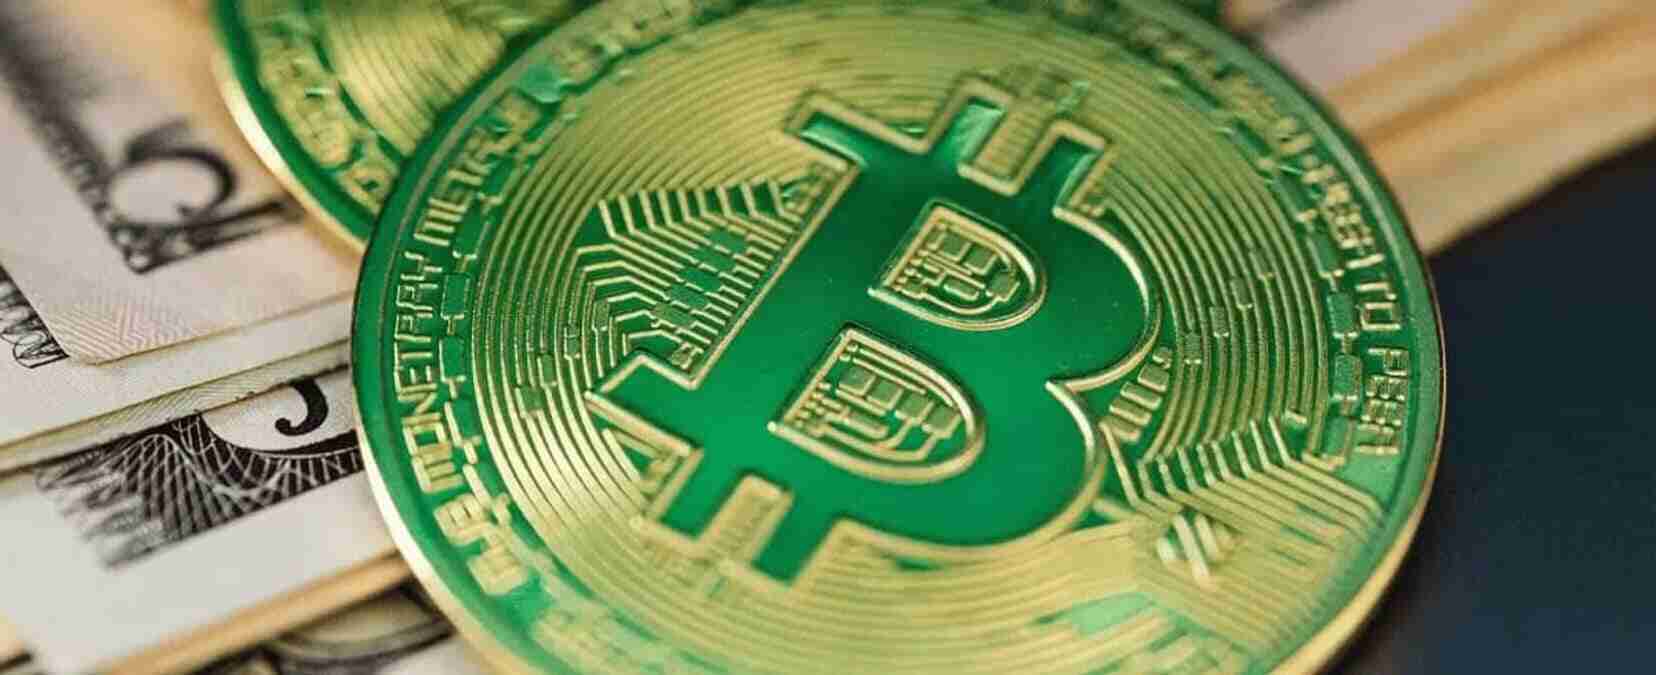 Imagem representando o Bitcoin Cash, mostrando o logo da criptomoeda